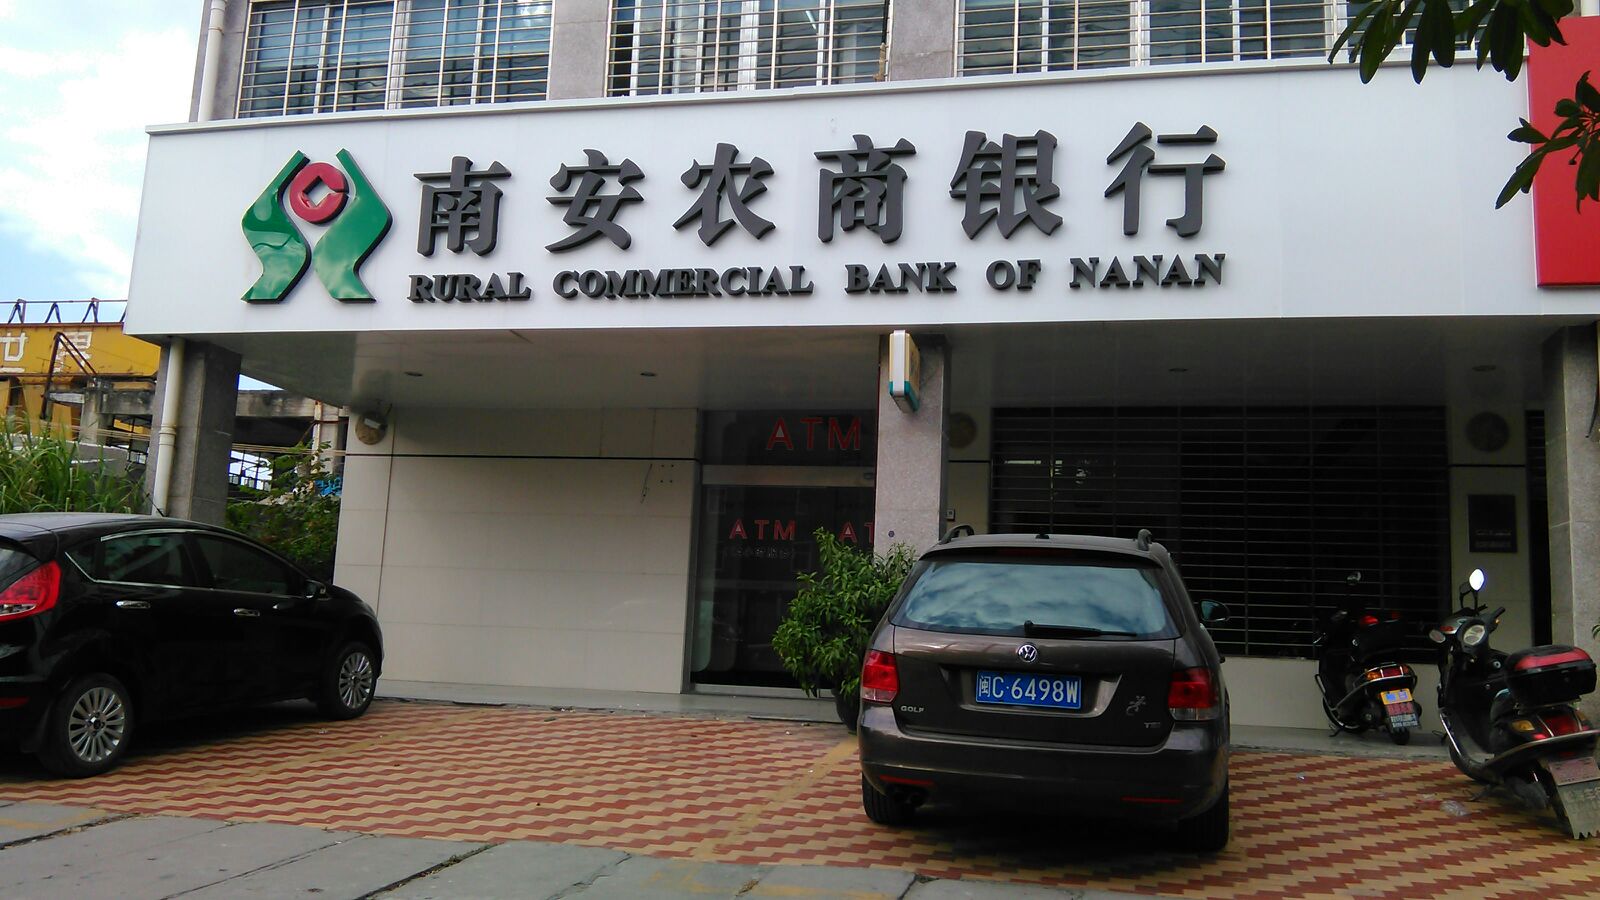 南安農村商業銀行24小時自助銀行(柳城支行)